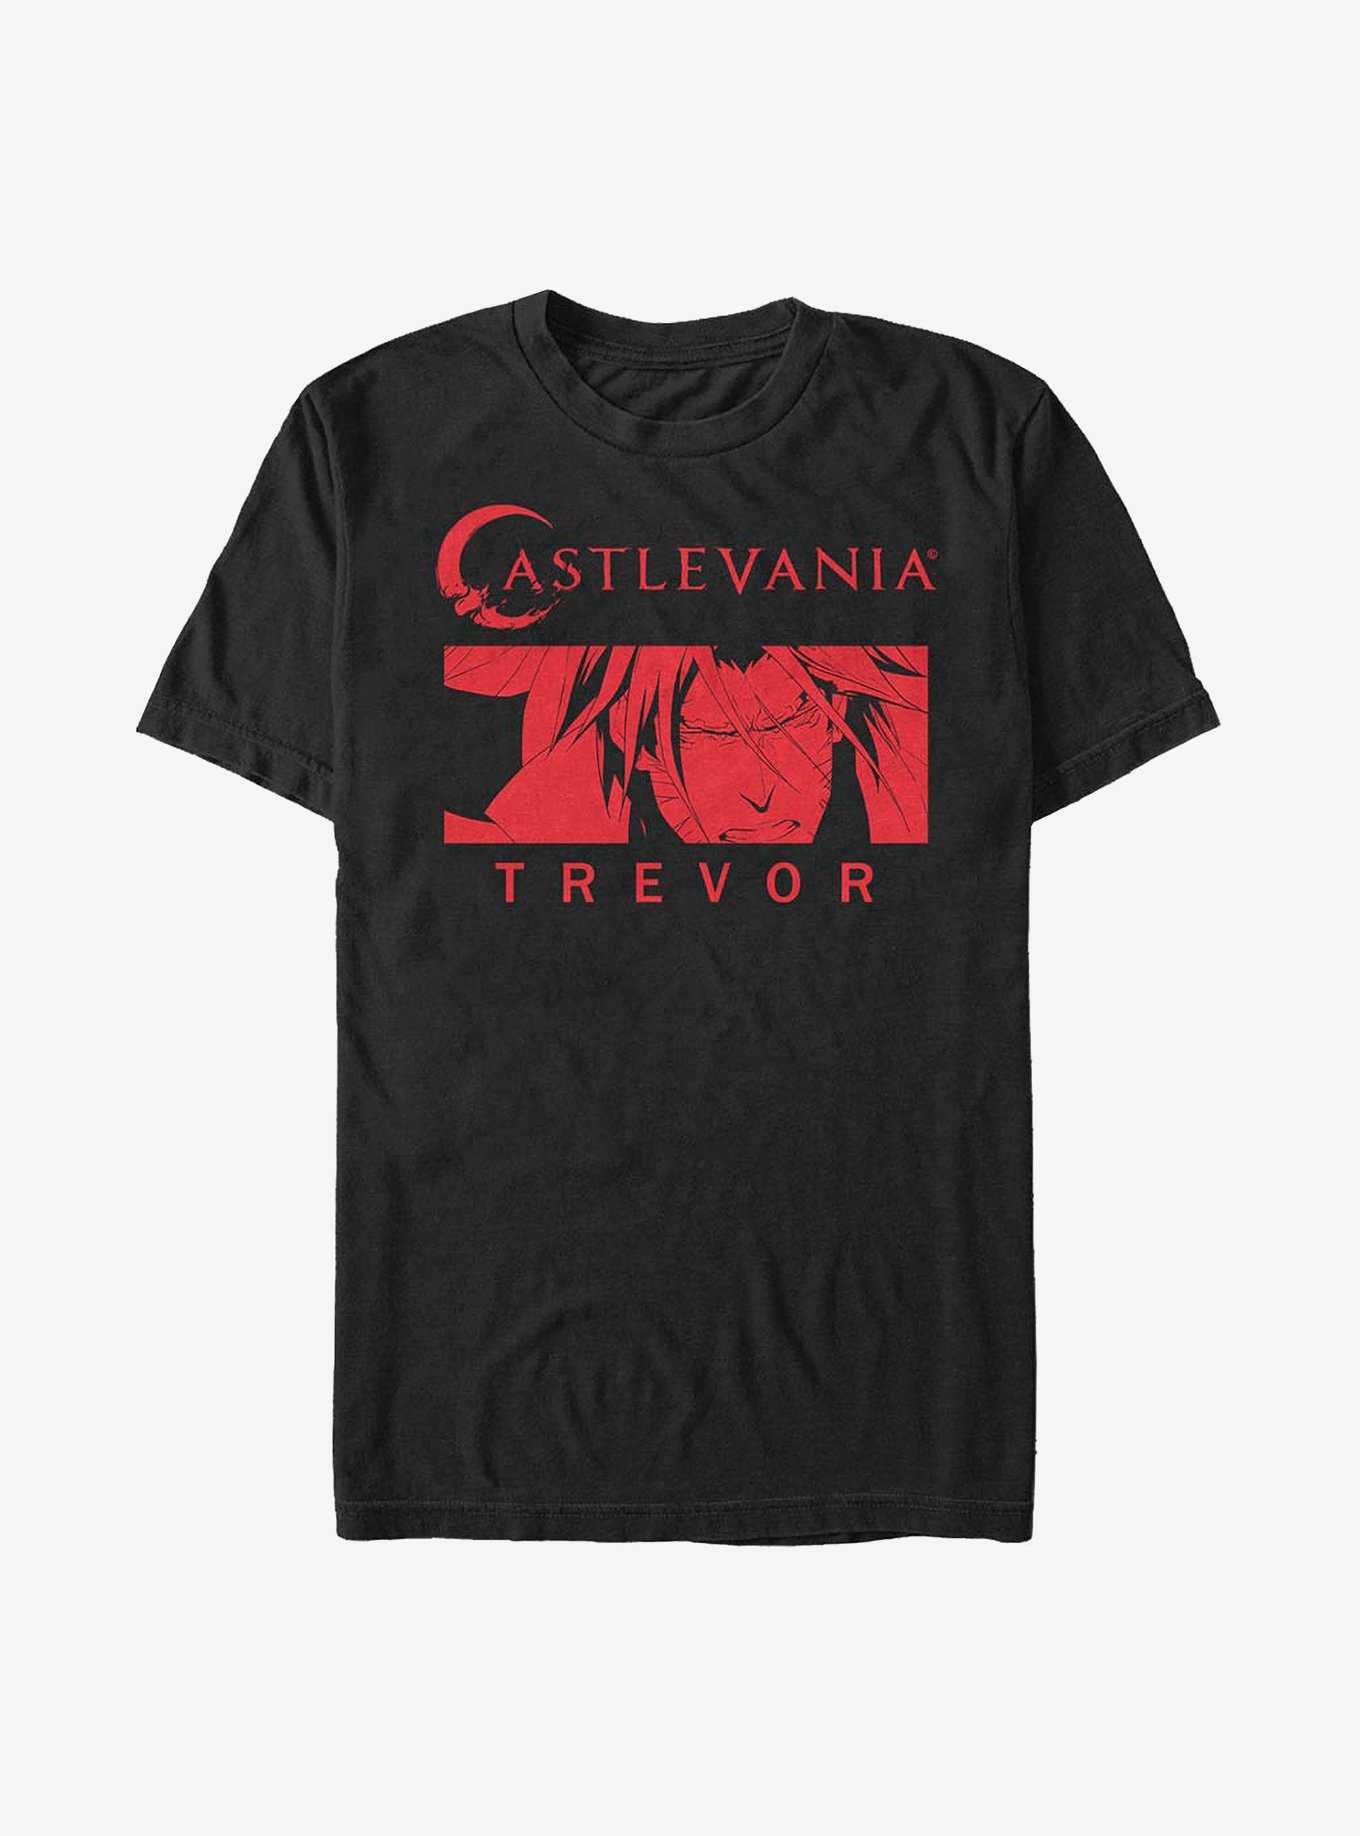 Castlevania Trevor Red T-Shirt, , hi-res